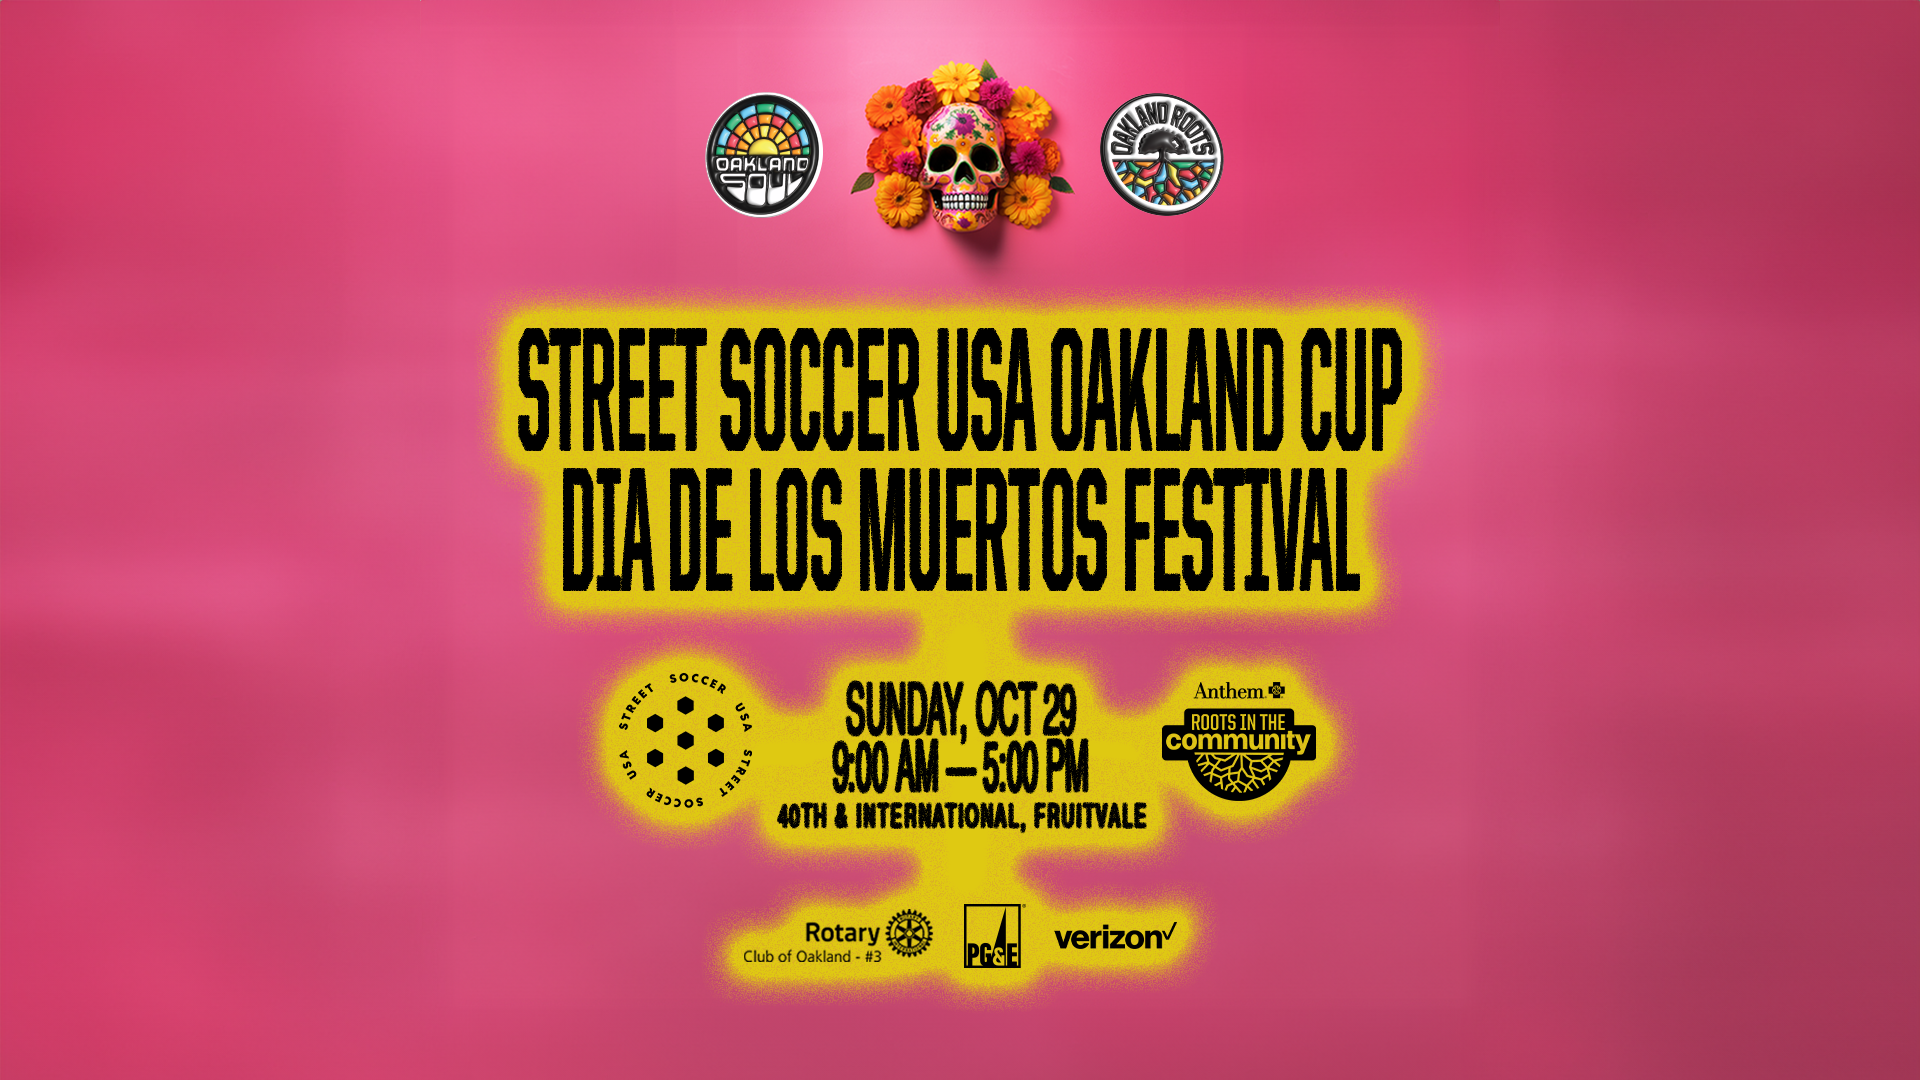 Street Soccer USA Oakland Cup Día de los Muertos Festival